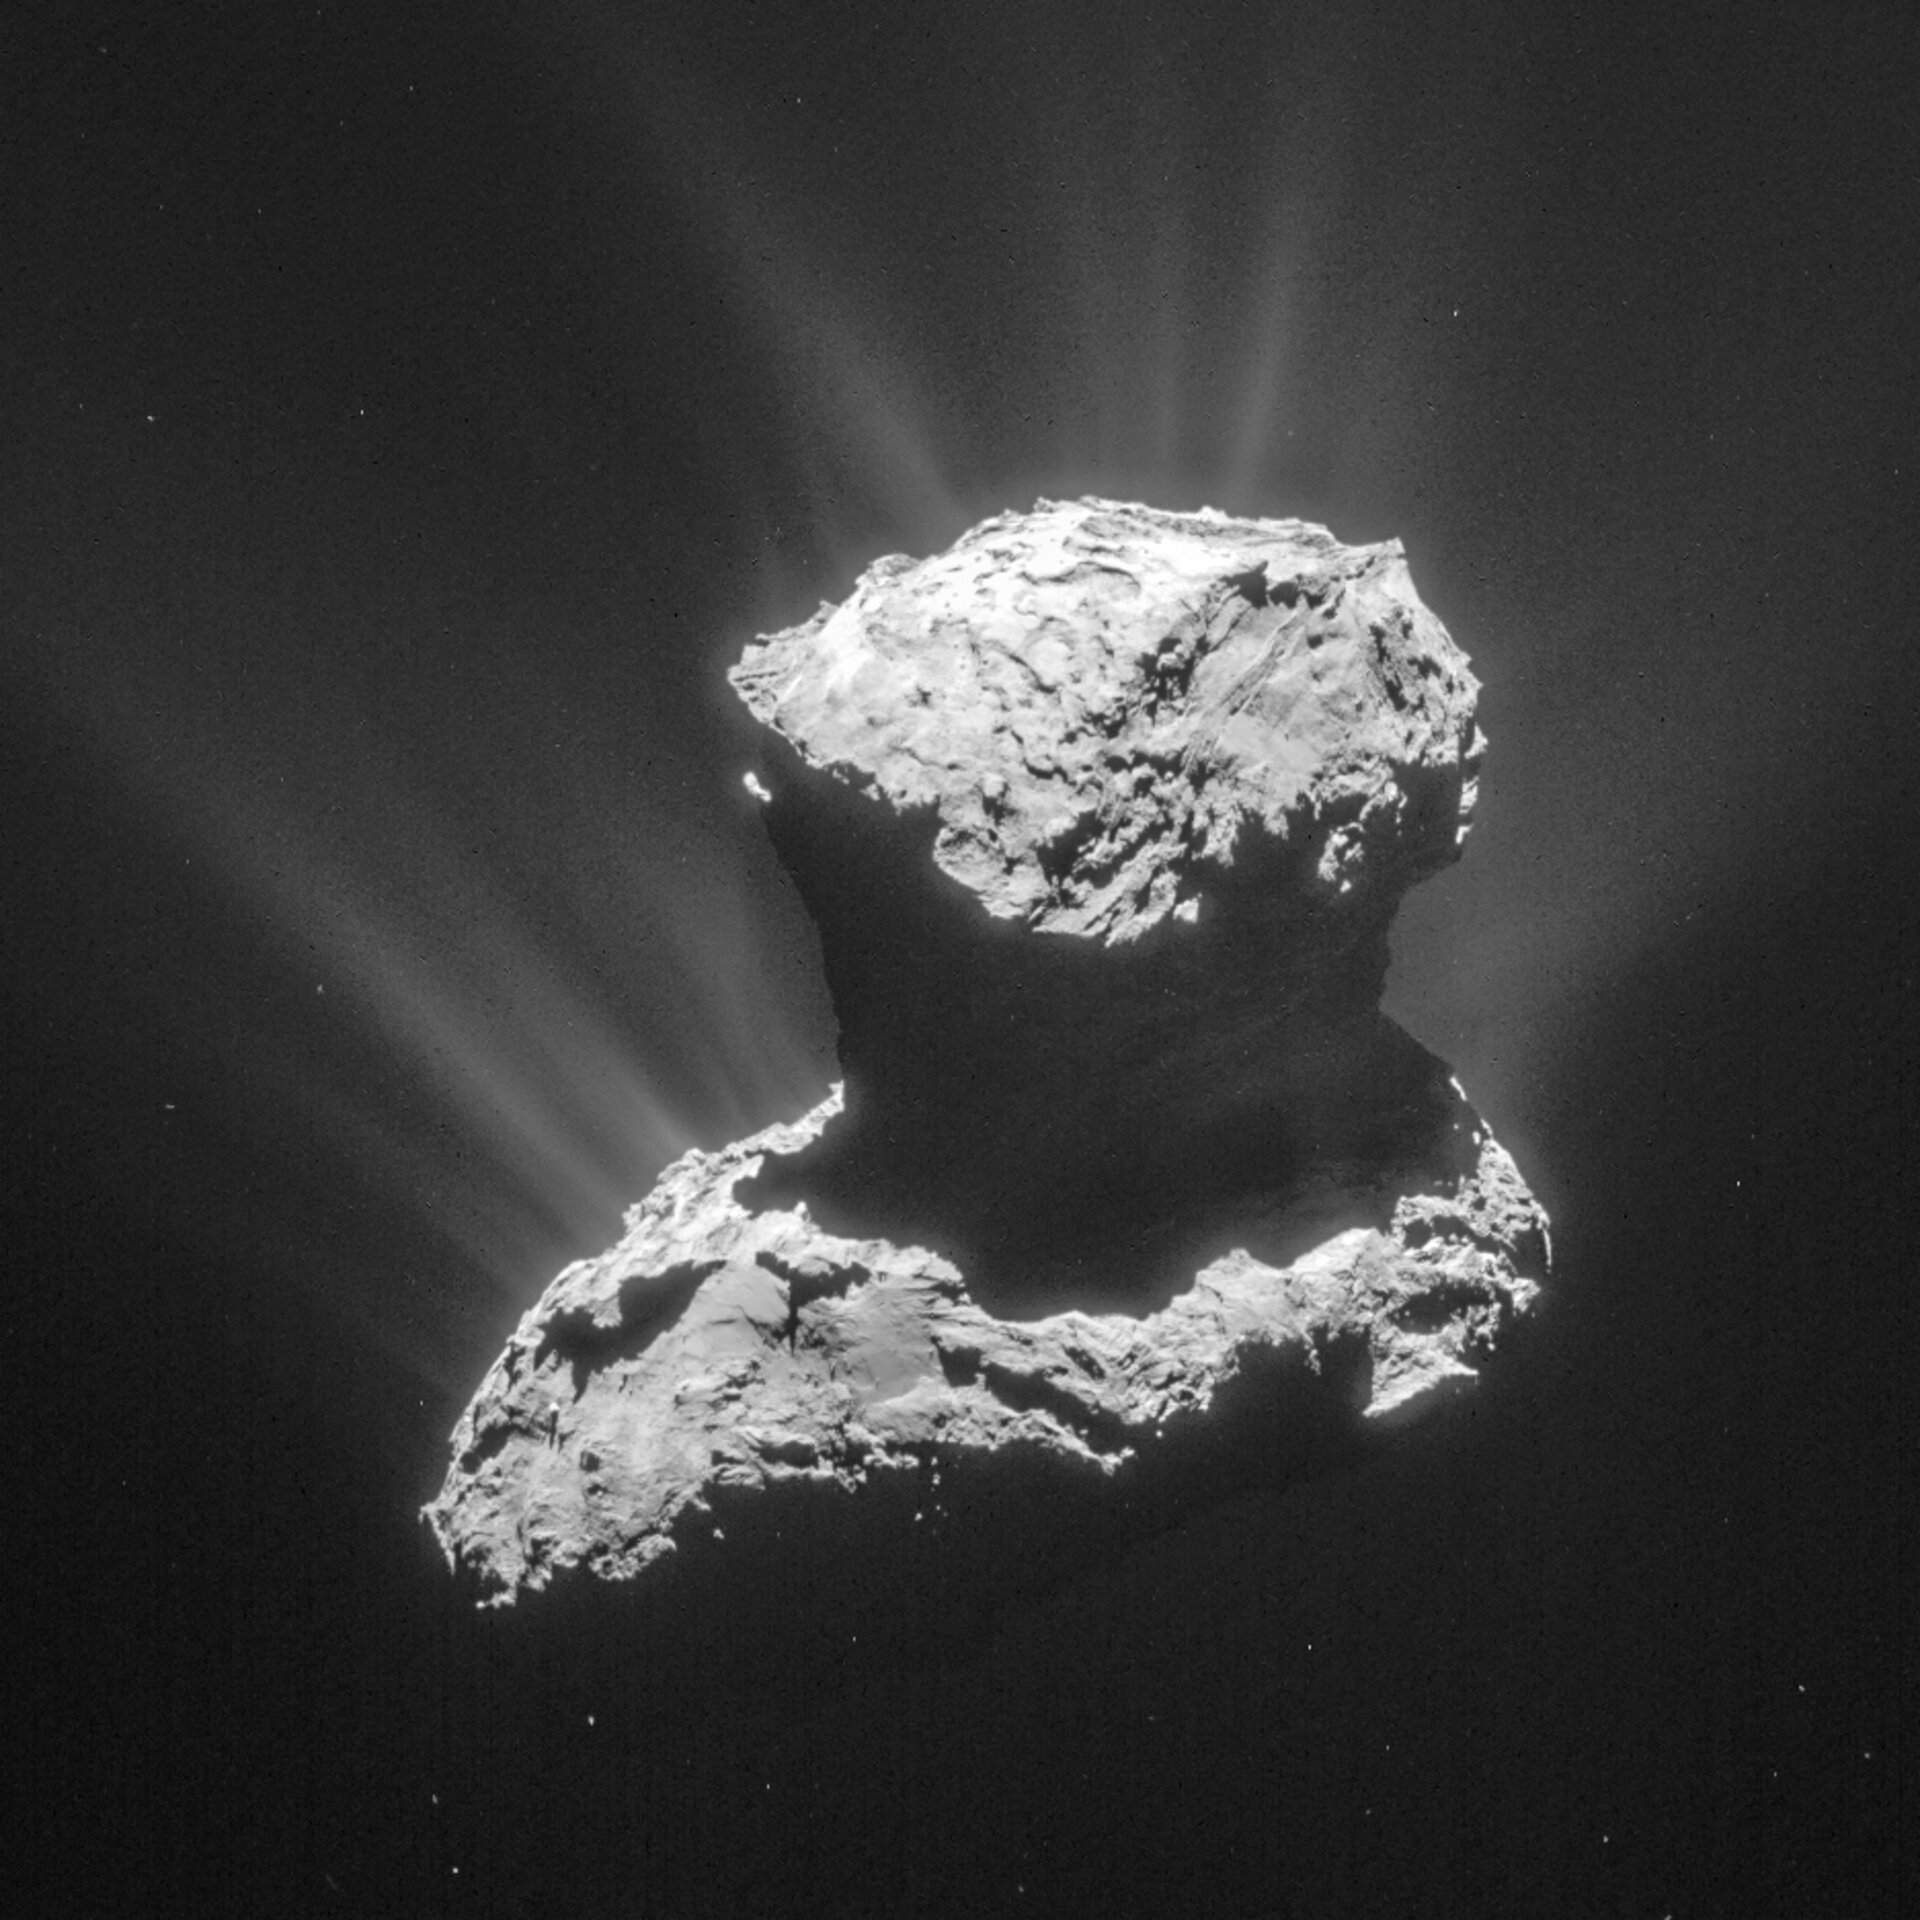 Rosetta’s comet